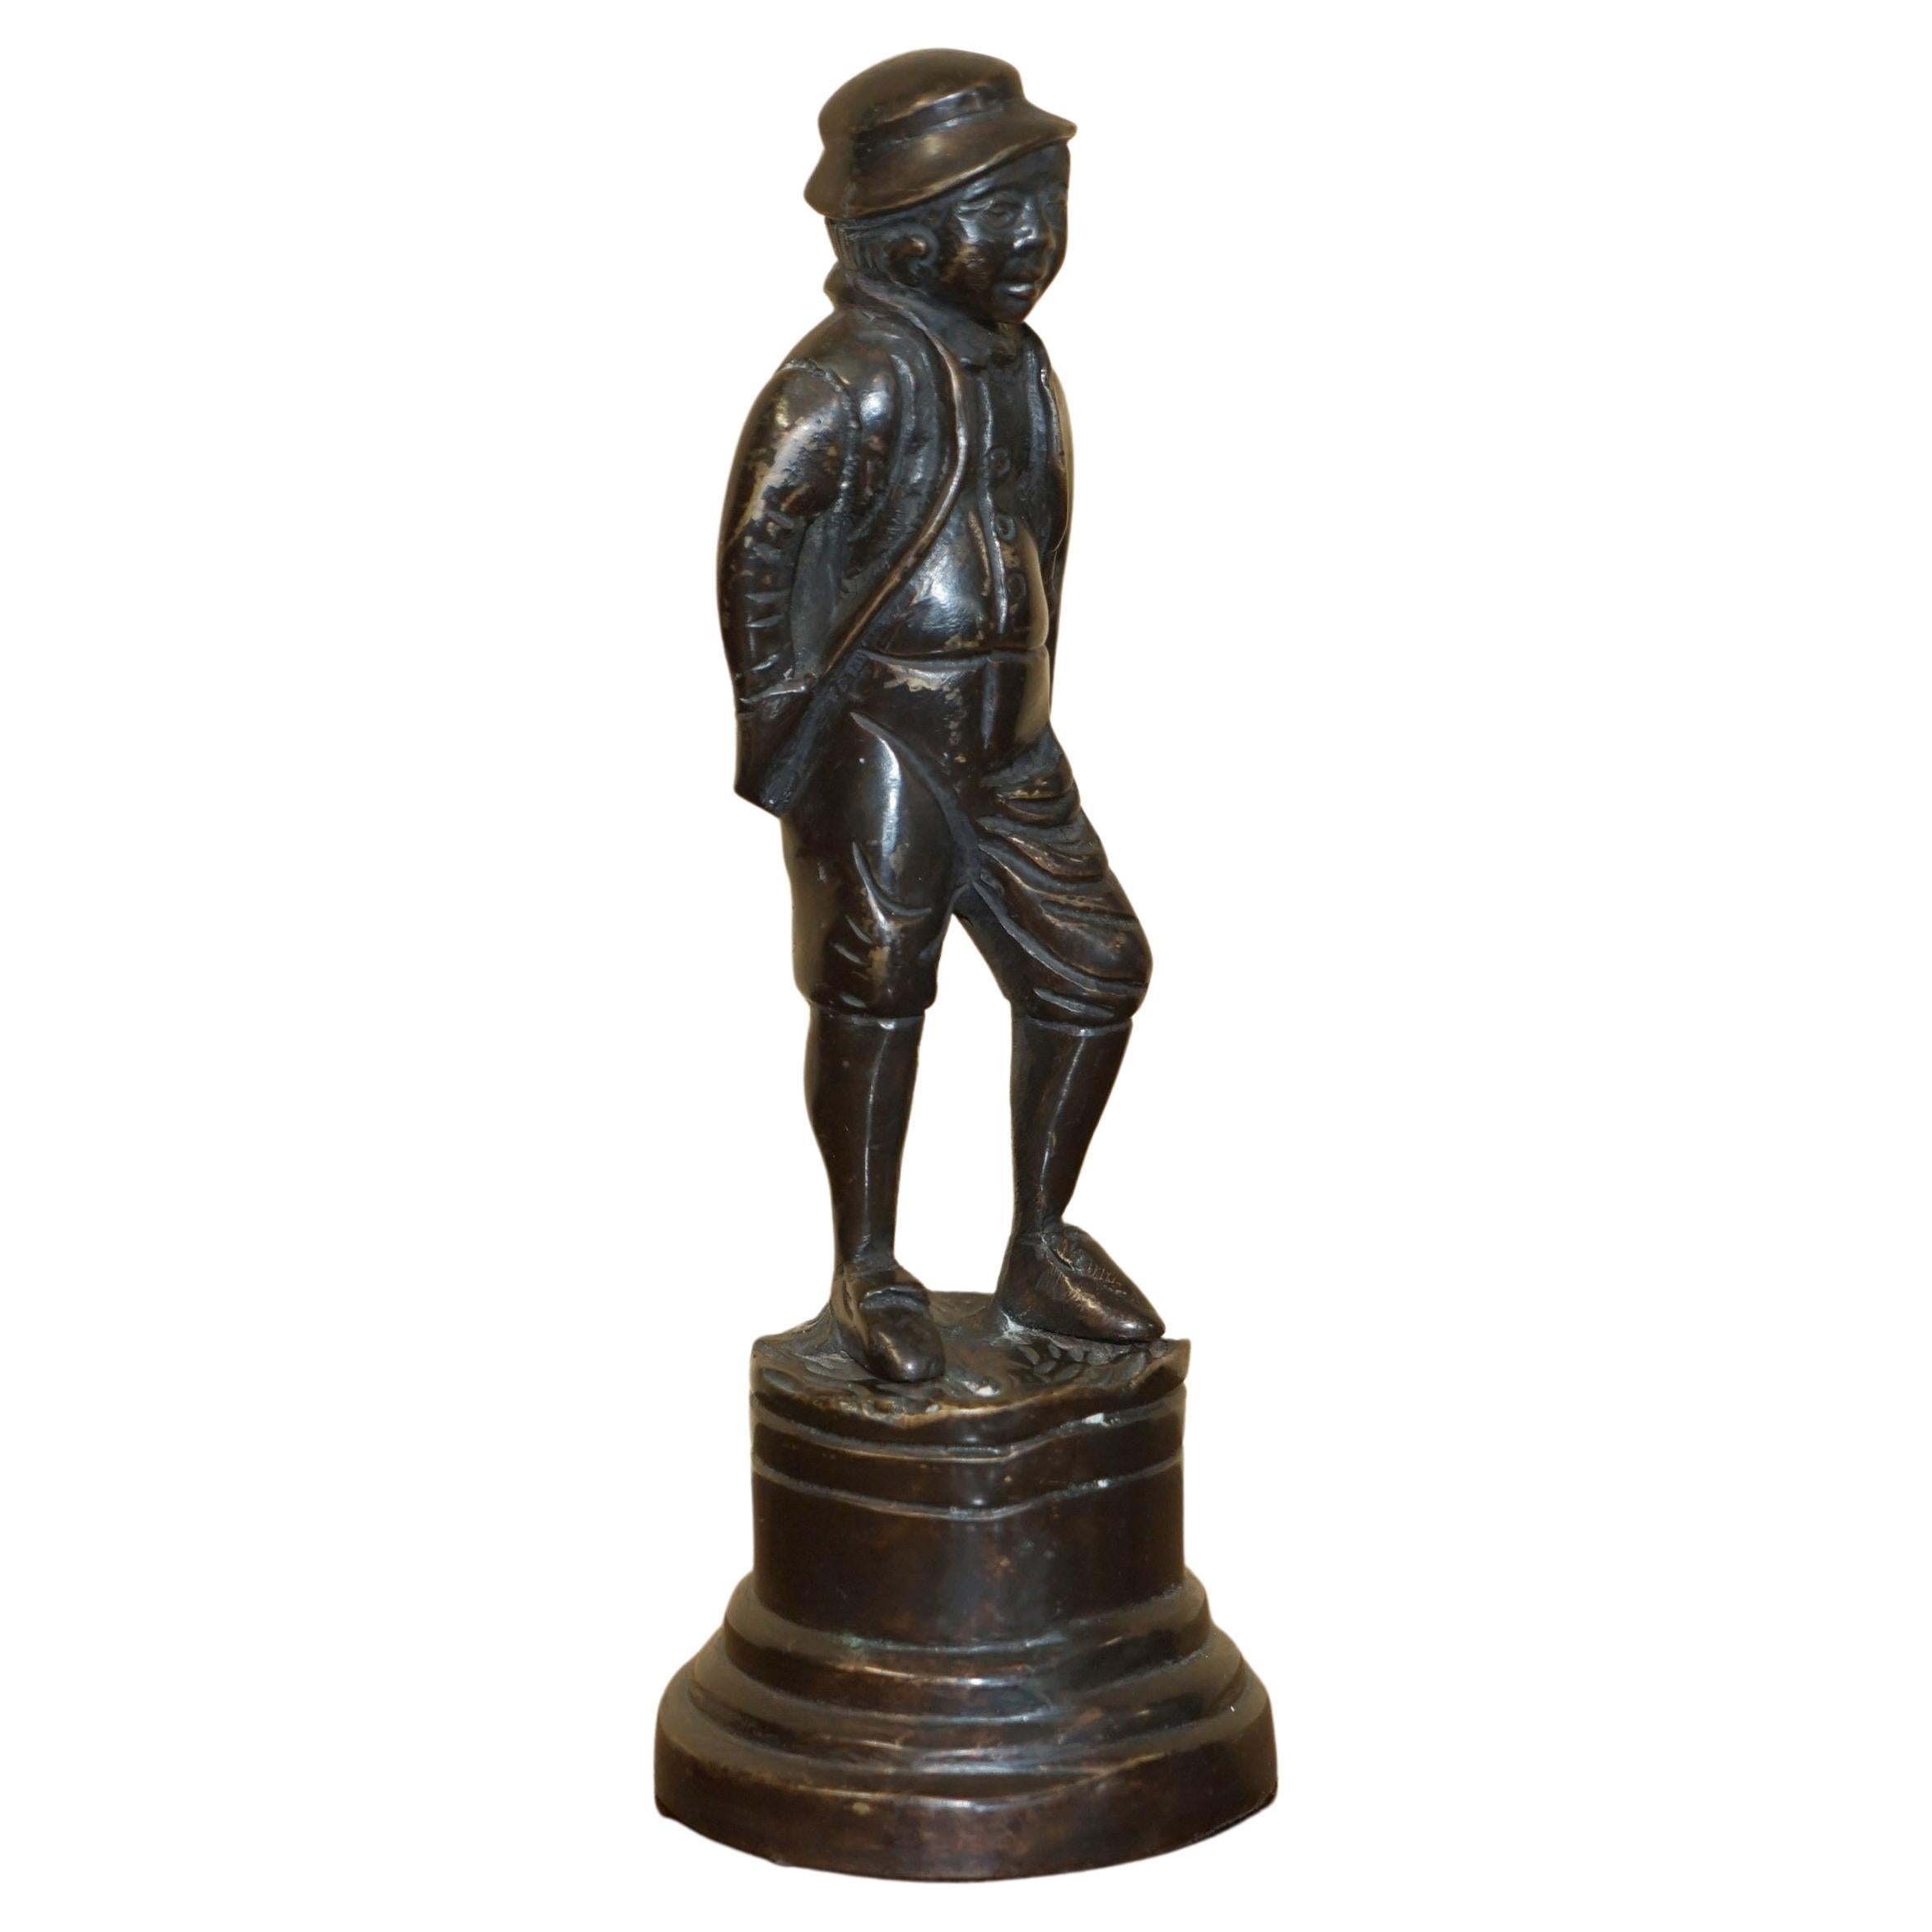 Jolie trouvaille rare d'une statue en bronze d'une Dandy victorienne